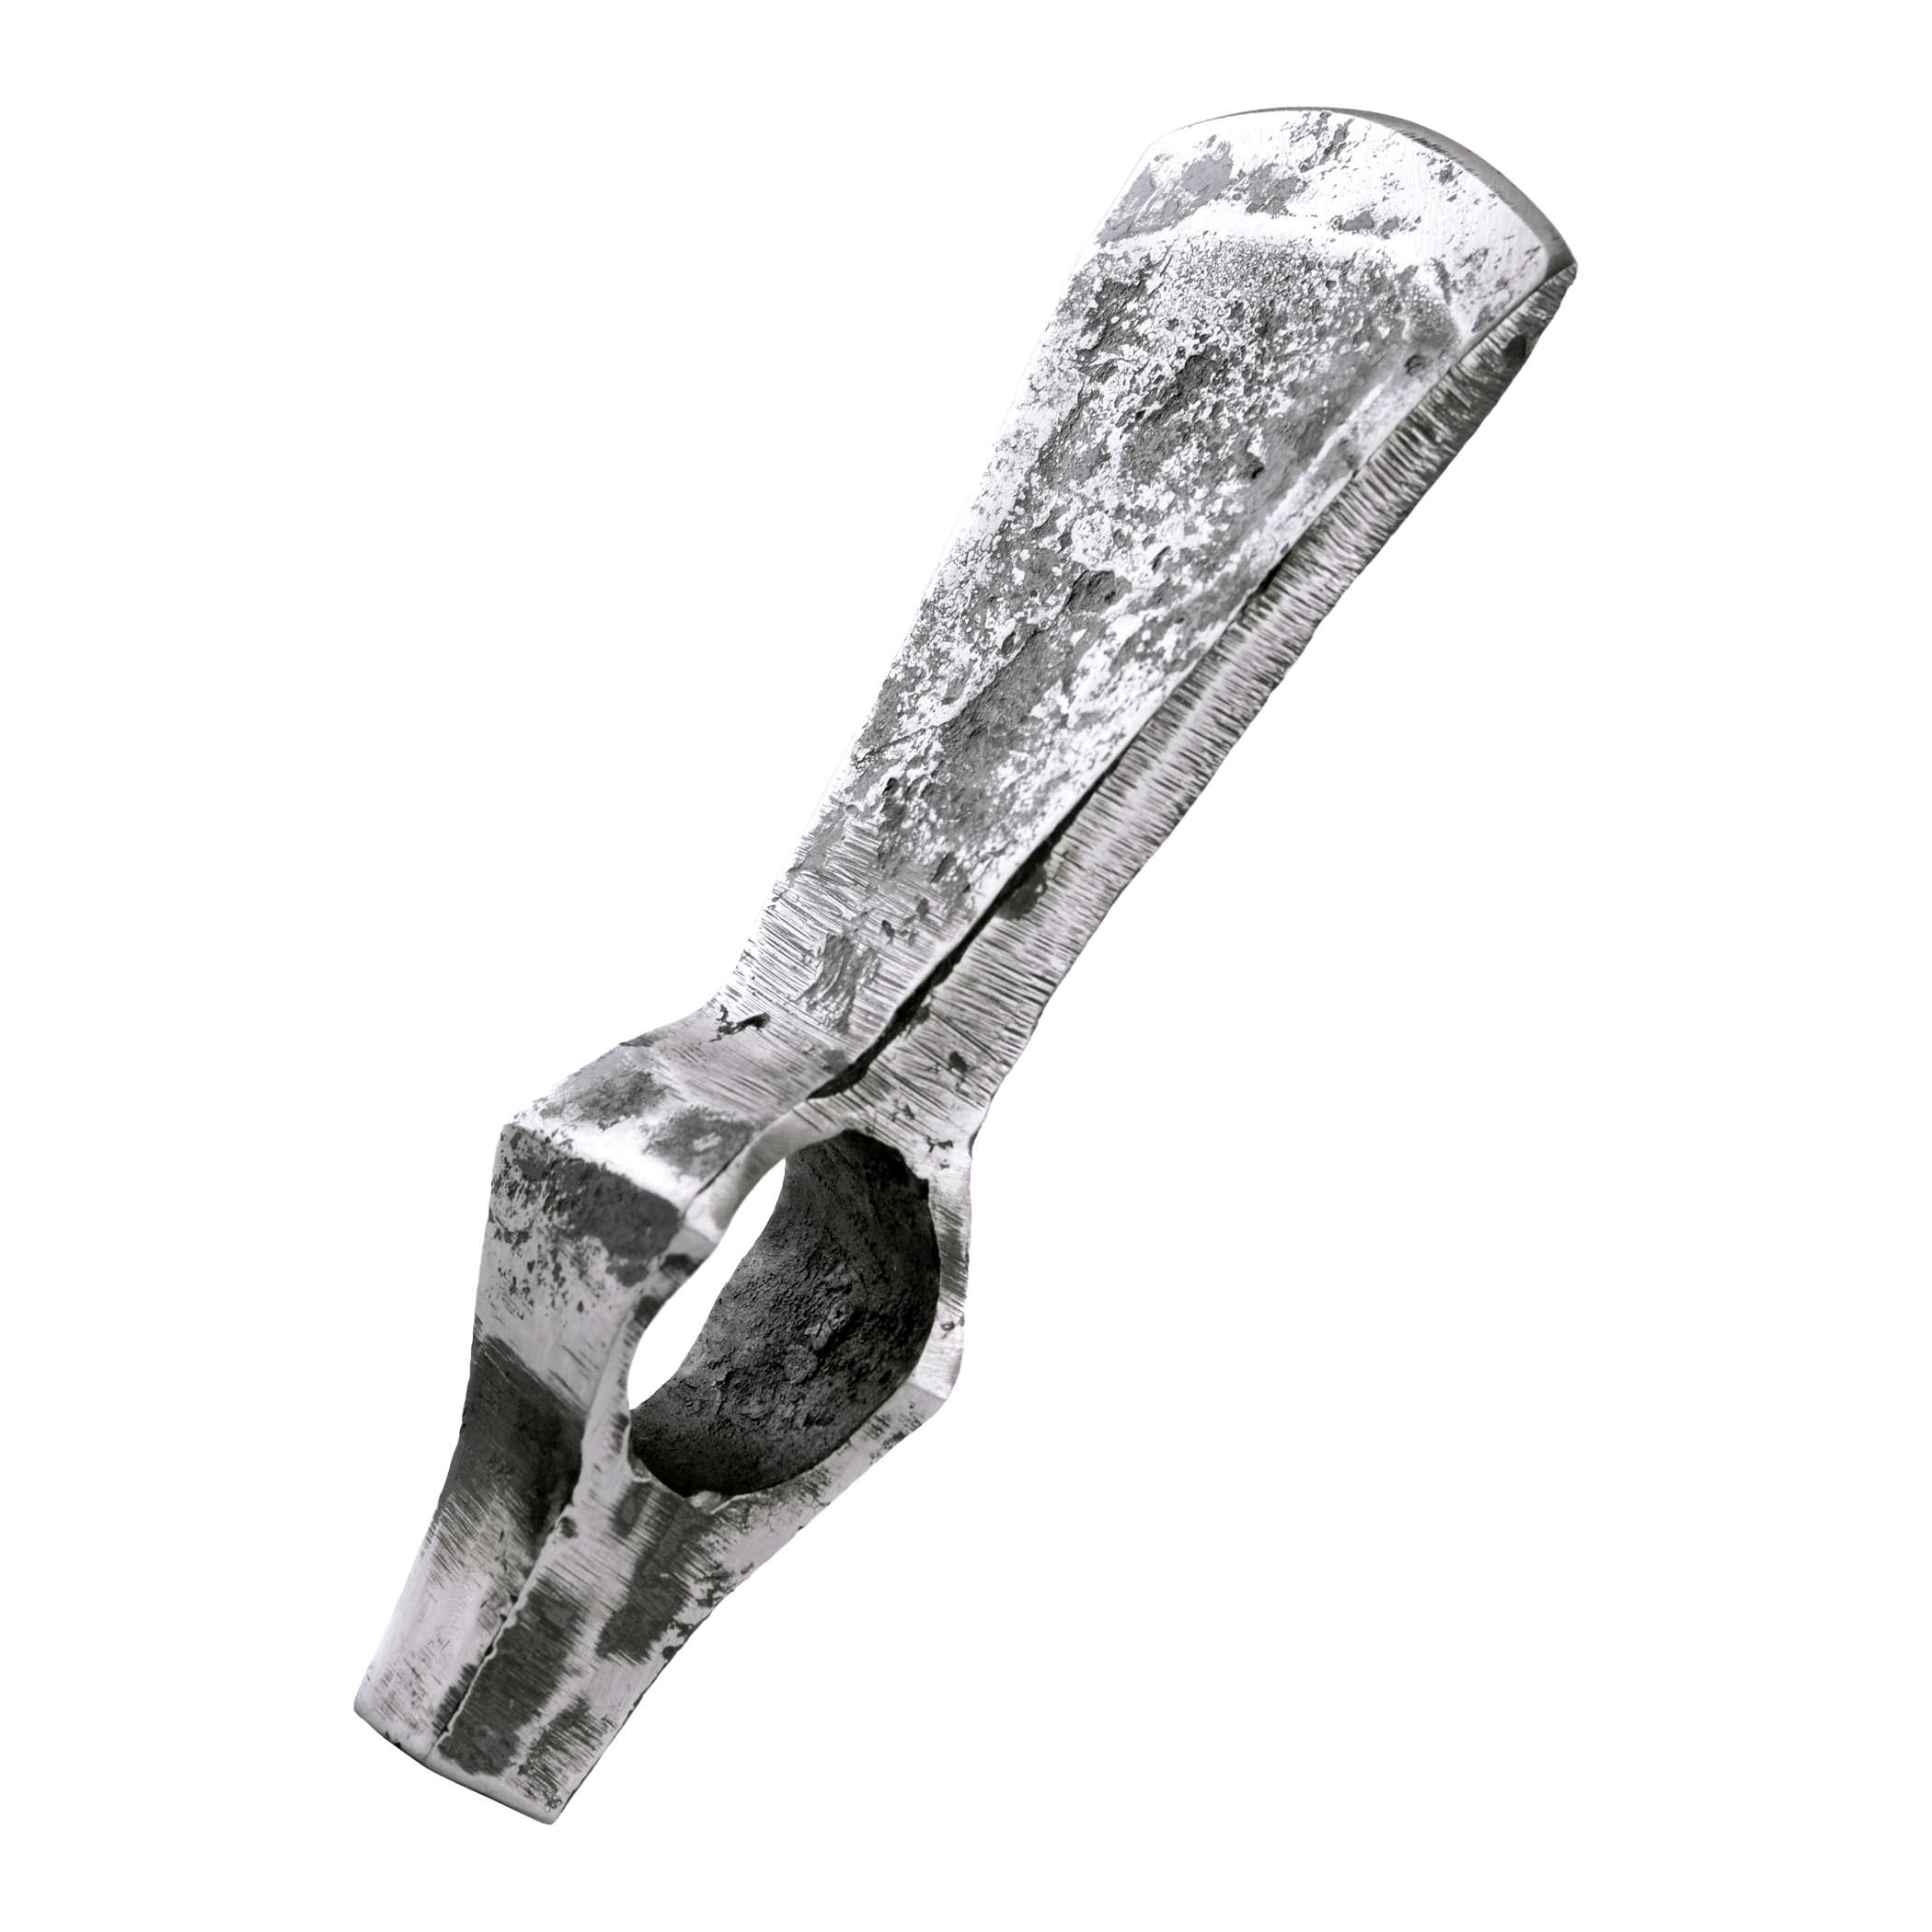 Frühmittelalterliche Hammerkopfaxt, stumpf, ca. 18cm, schaukampf